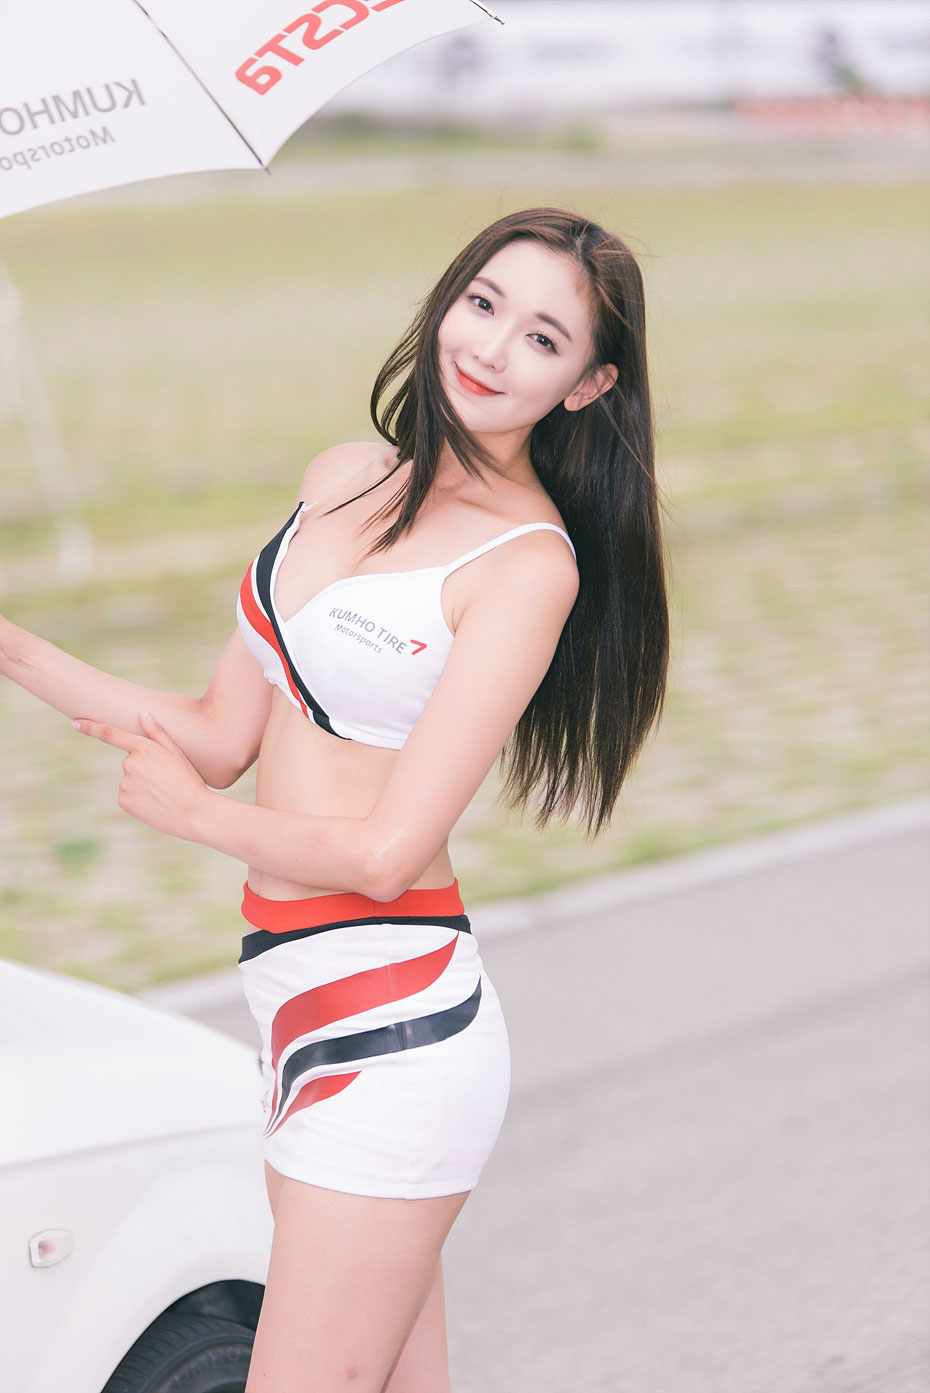 Moon Ga Kyung ECSTA Super Challenge 2015